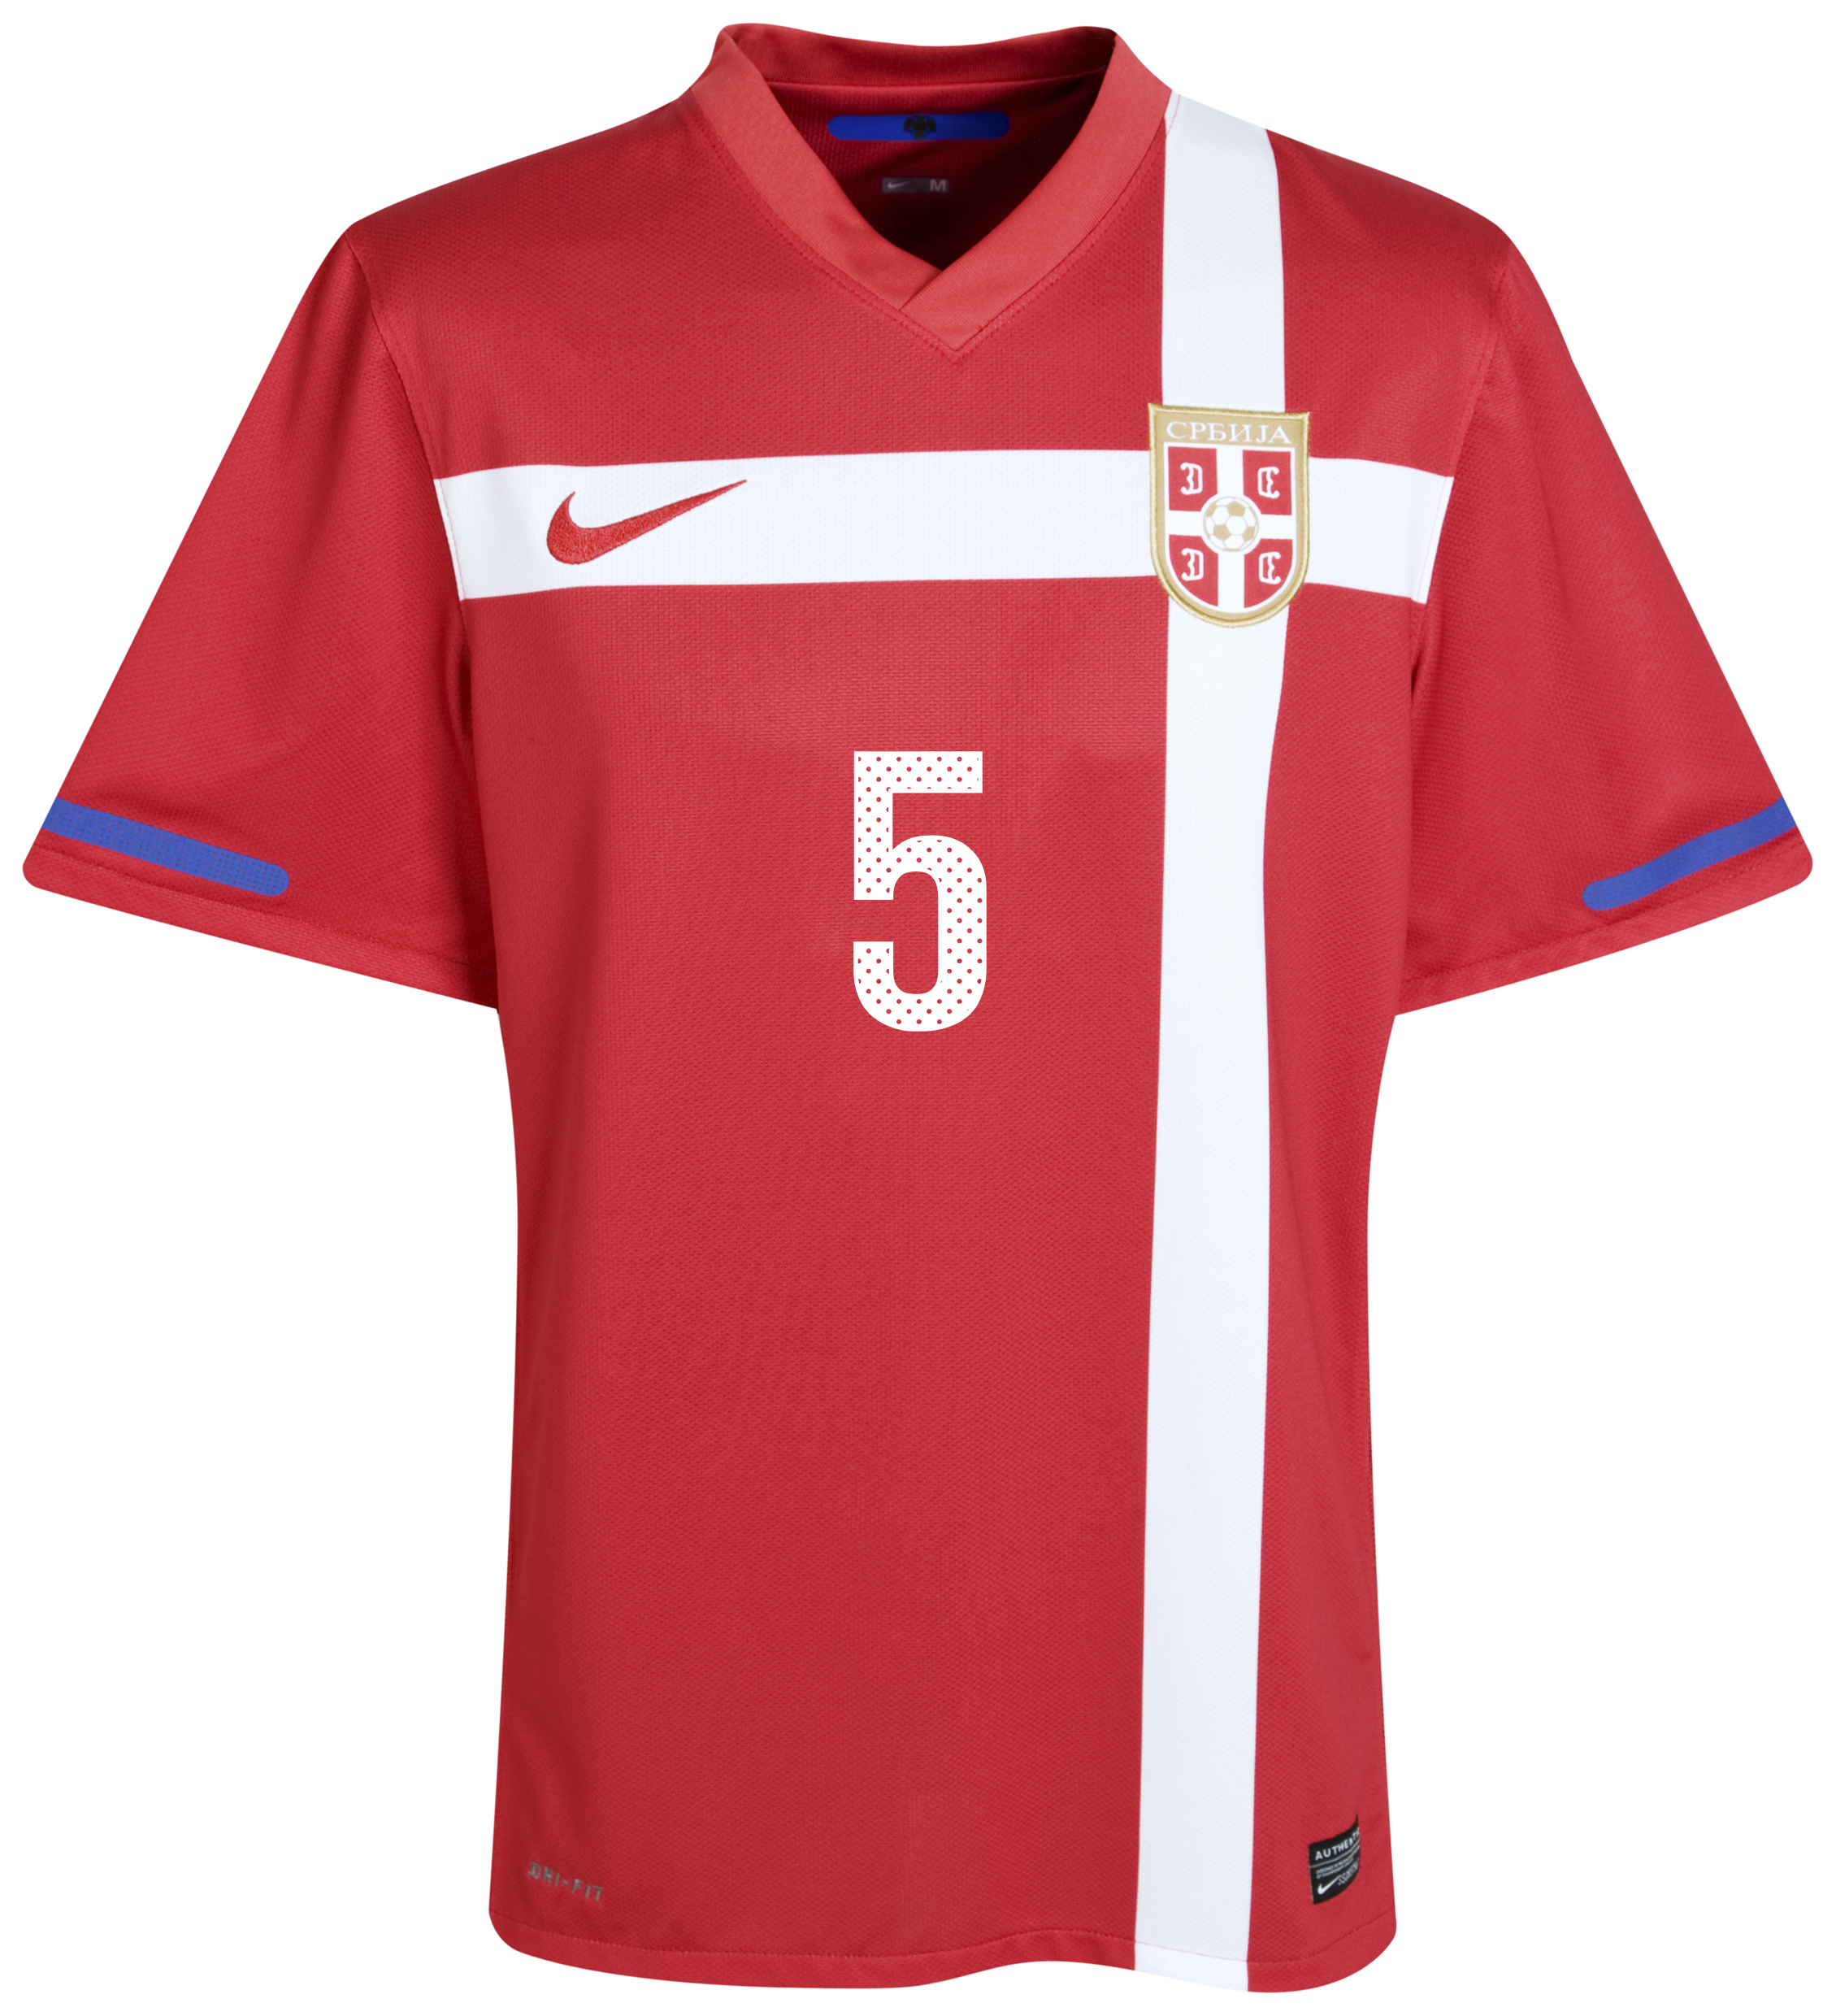 الملابس النهائيه لكأس العالم (2010)بجنوب افريقيا Kb-71658a